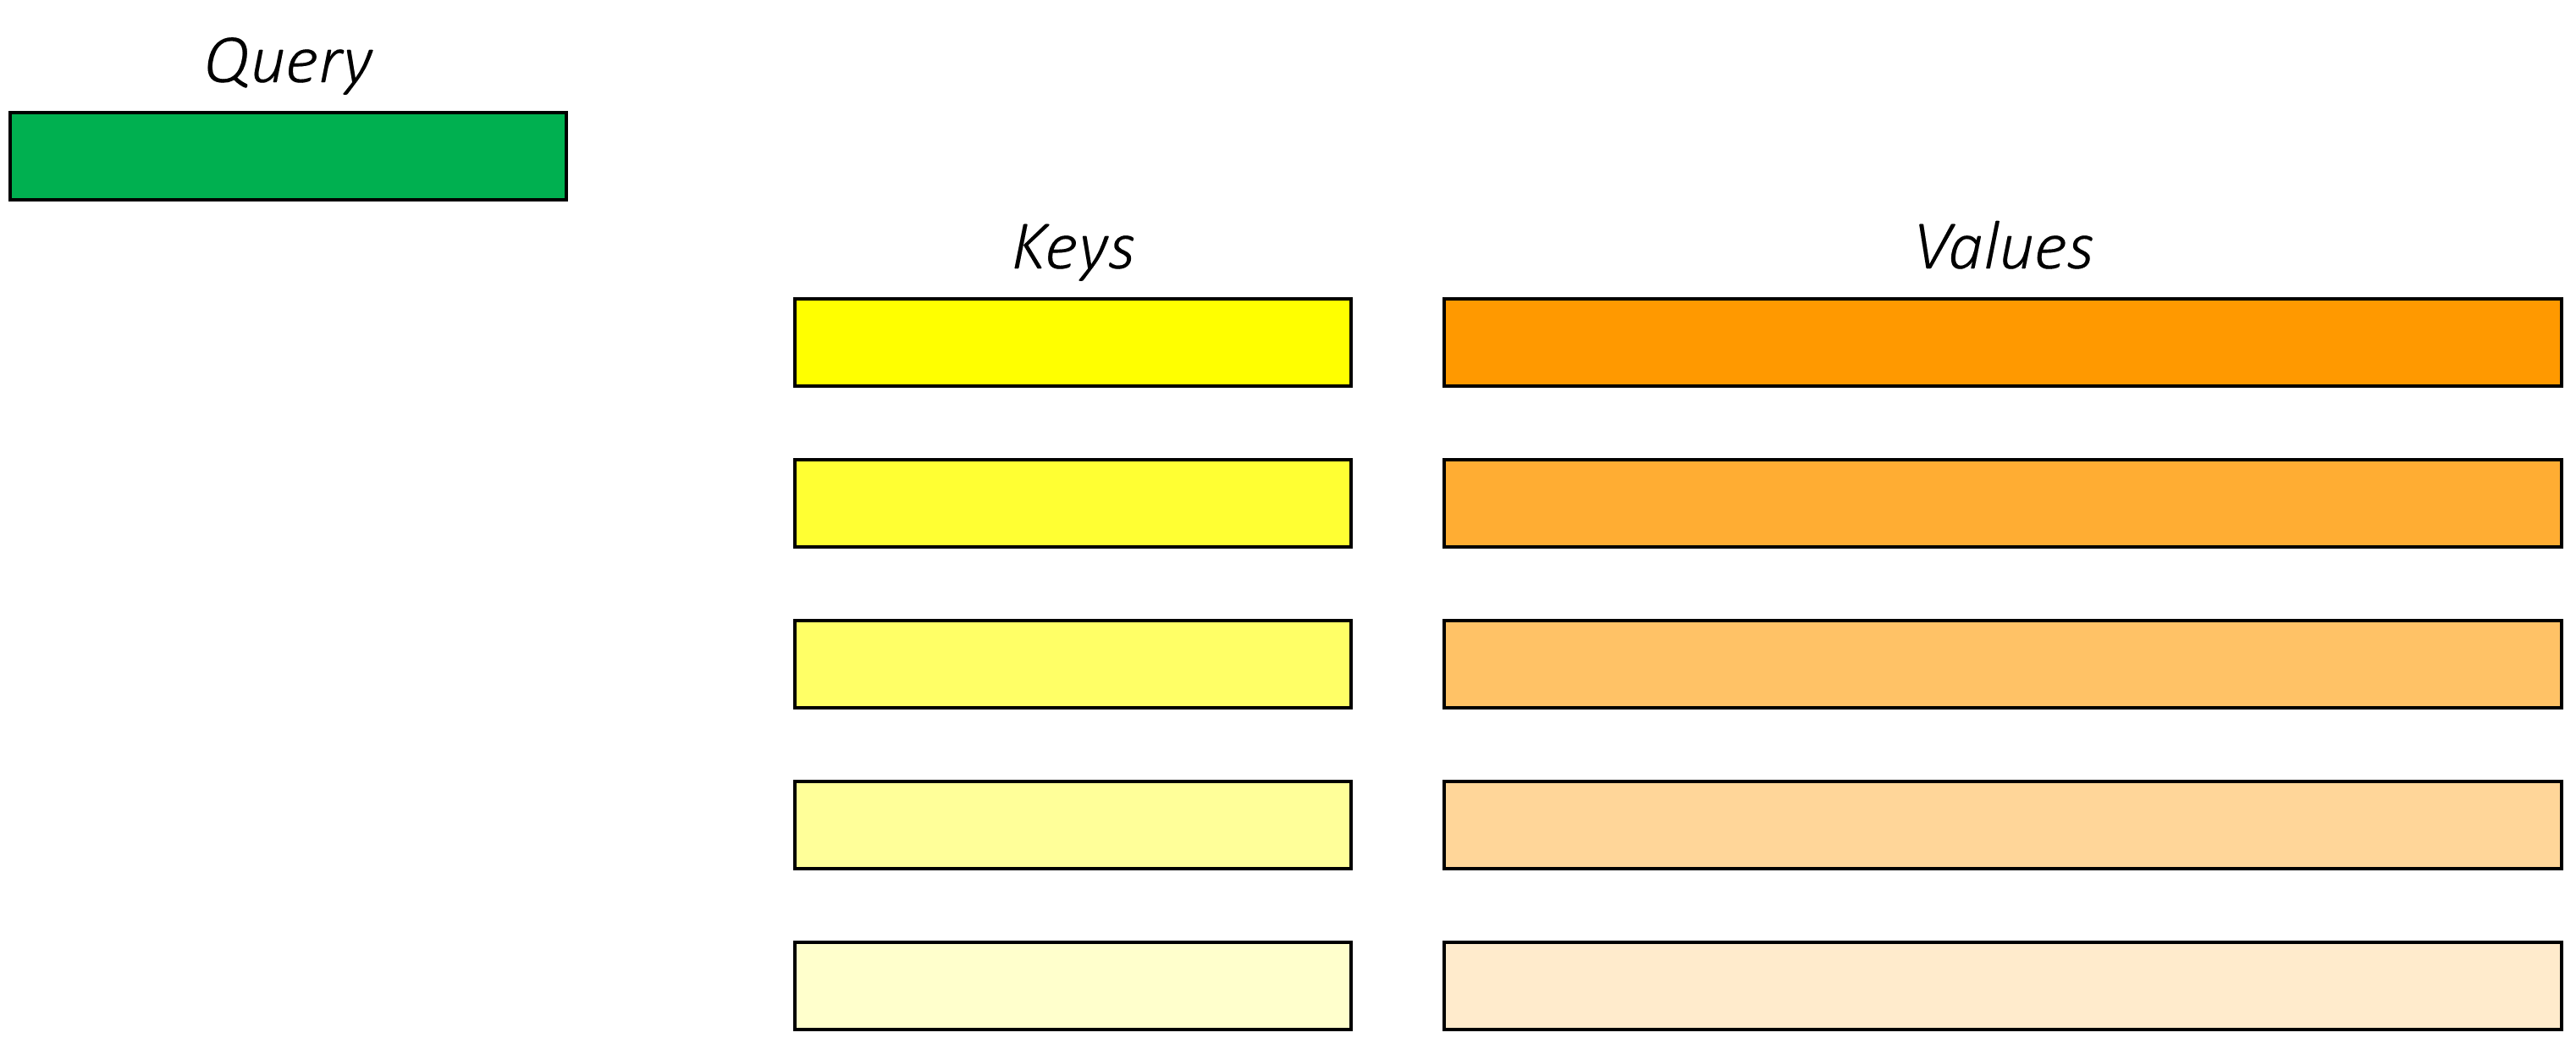 queries_keys_values_1.PNG